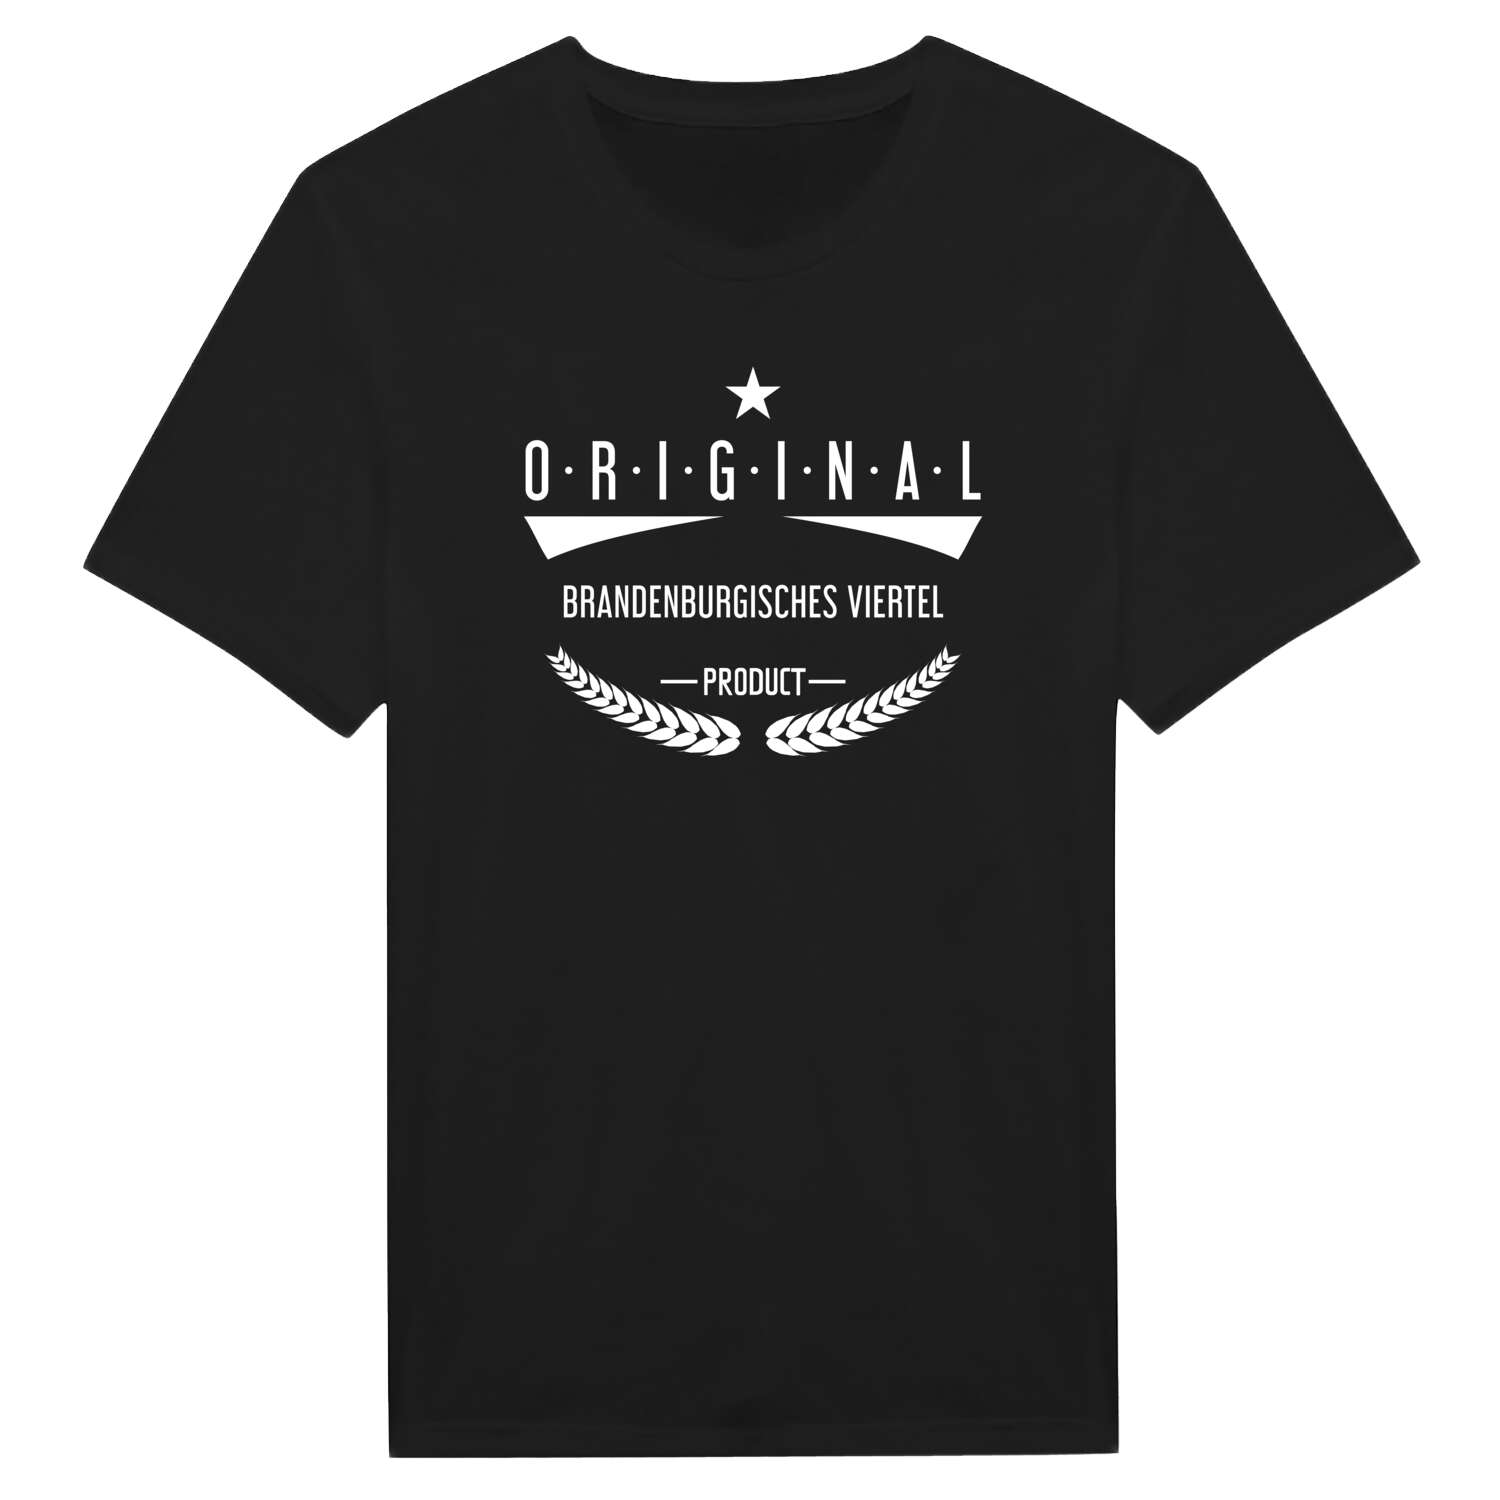 Brandenburgisches Viertel T-Shirt »Original Product«